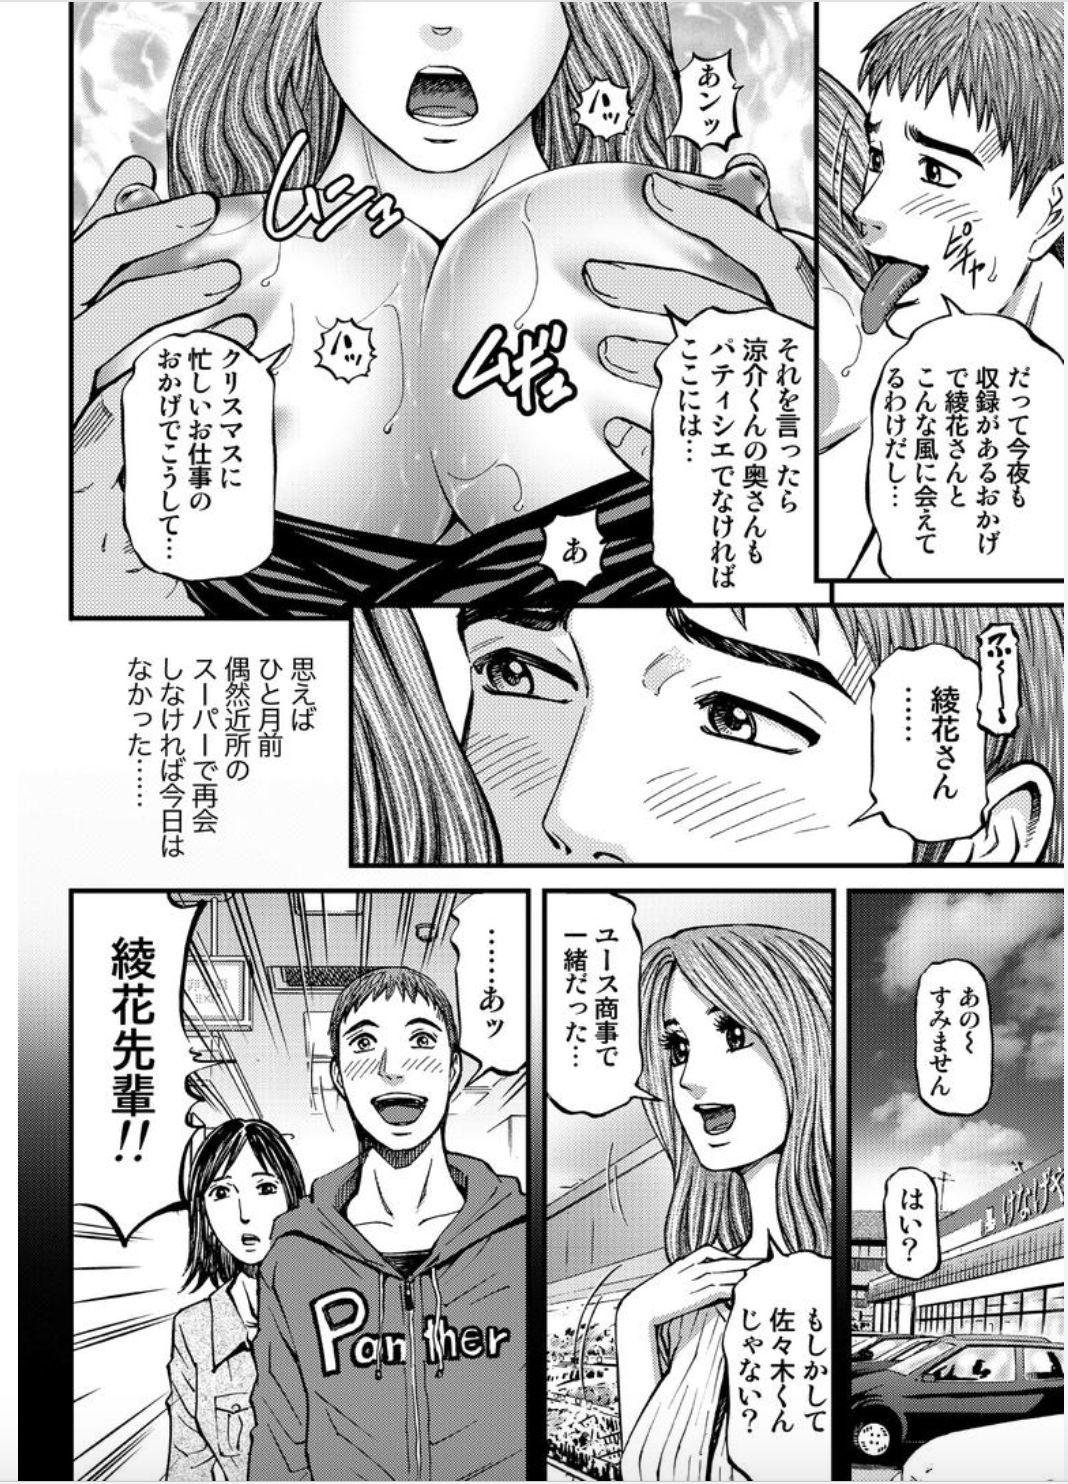 Cachonda Onna-tachi ga Iku Toki... Ero Drama Vol. 4 Seiya Matures - Page 6